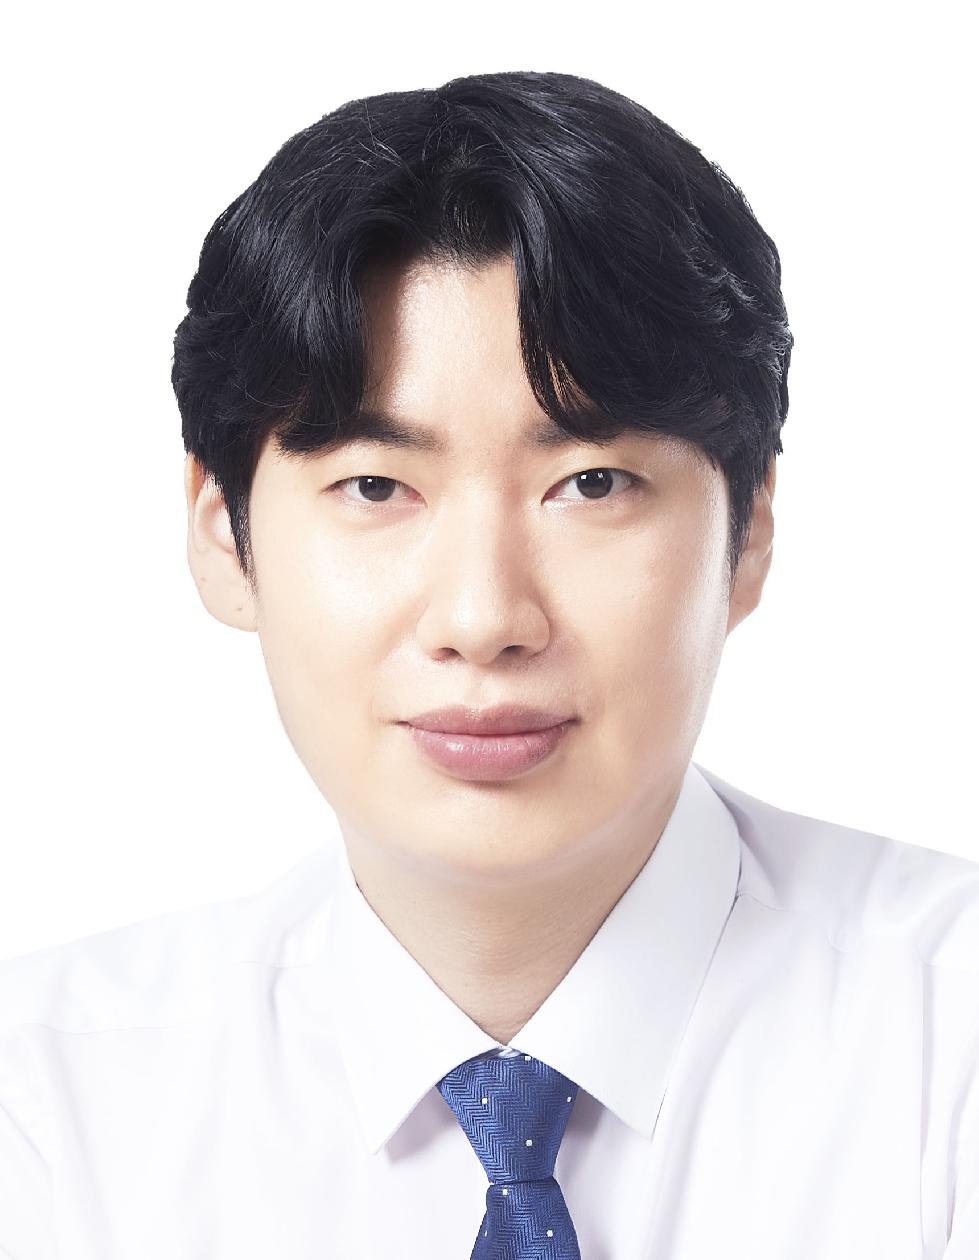 용인시의회 이상욱 의원 대표발의  ‘용인시 갈등 예방과 해결에 관한 조례